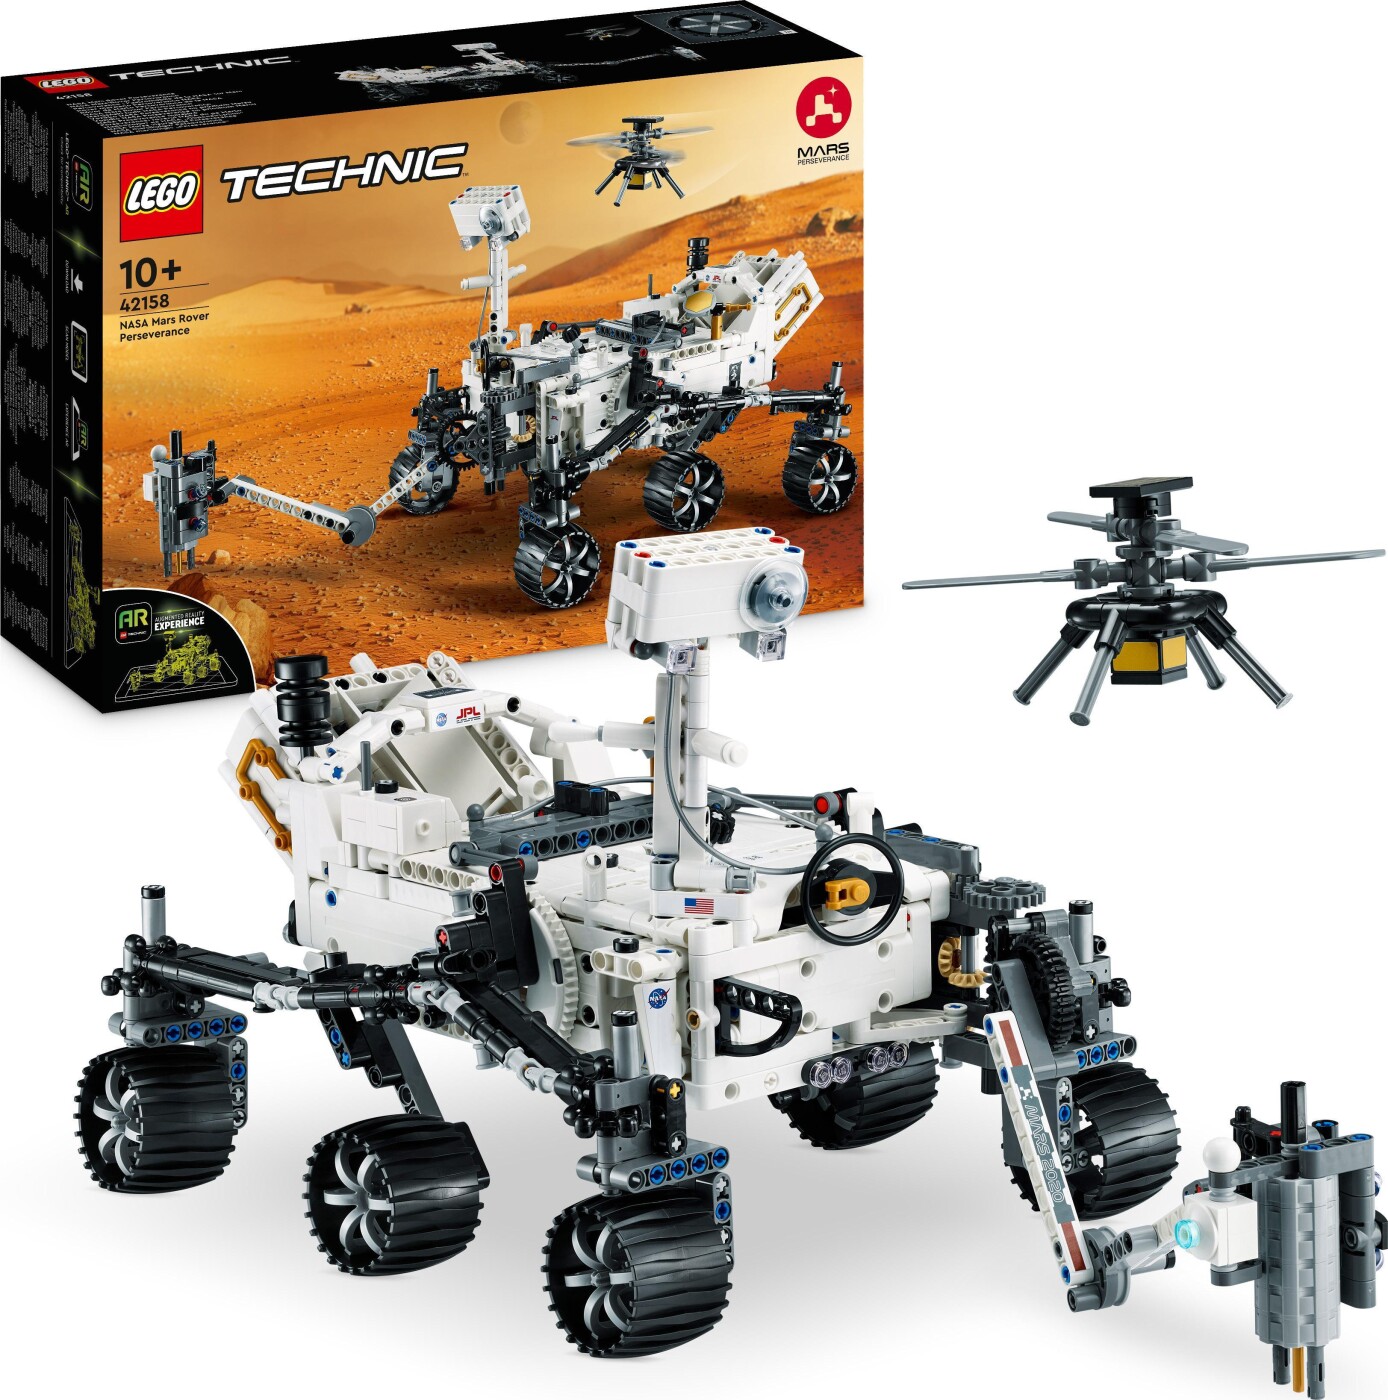 Billede af Lego Technic - Nasa Mars Rover Perseverance Mission - 42158 hos Gucca.dk